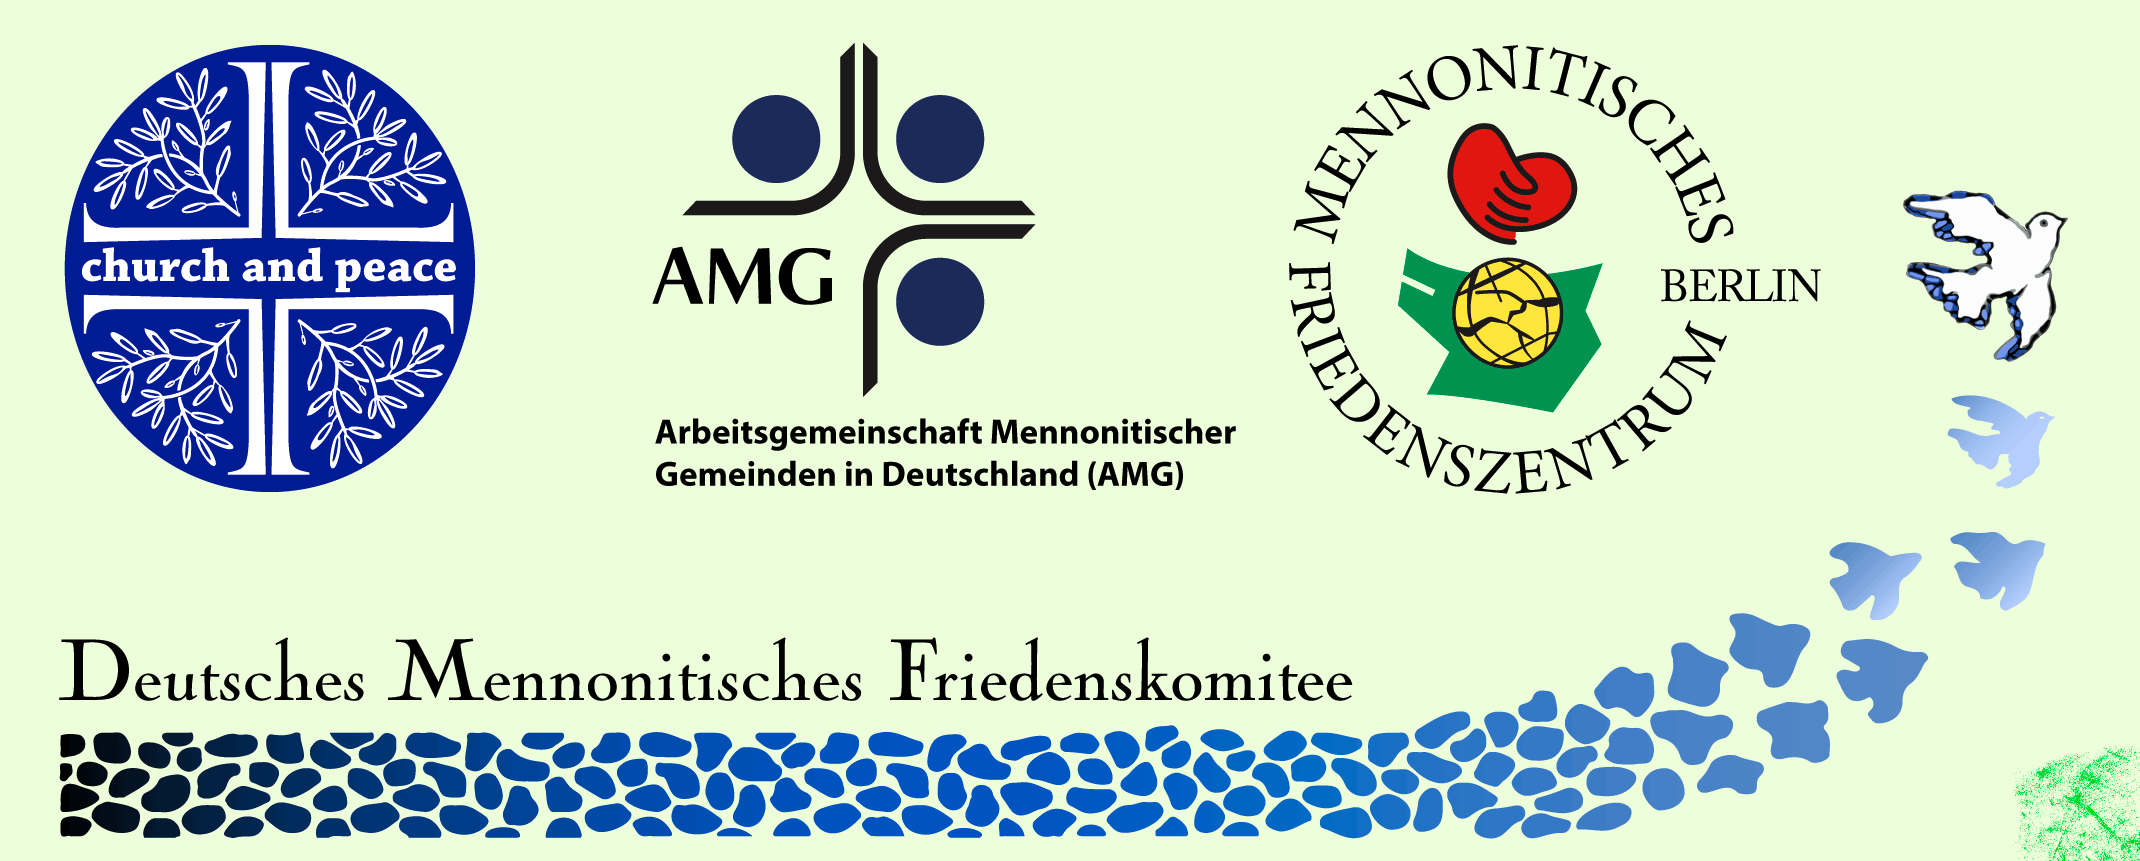 Christliche Friedensinitiativen, "church and peace", Mennonitisches Friedenszentrum Berlin, Deutsches Mennonitisches Friedenskomitee, Arbeitsgemeinschaft Mennonitischer Gemeinden in Deutschland.